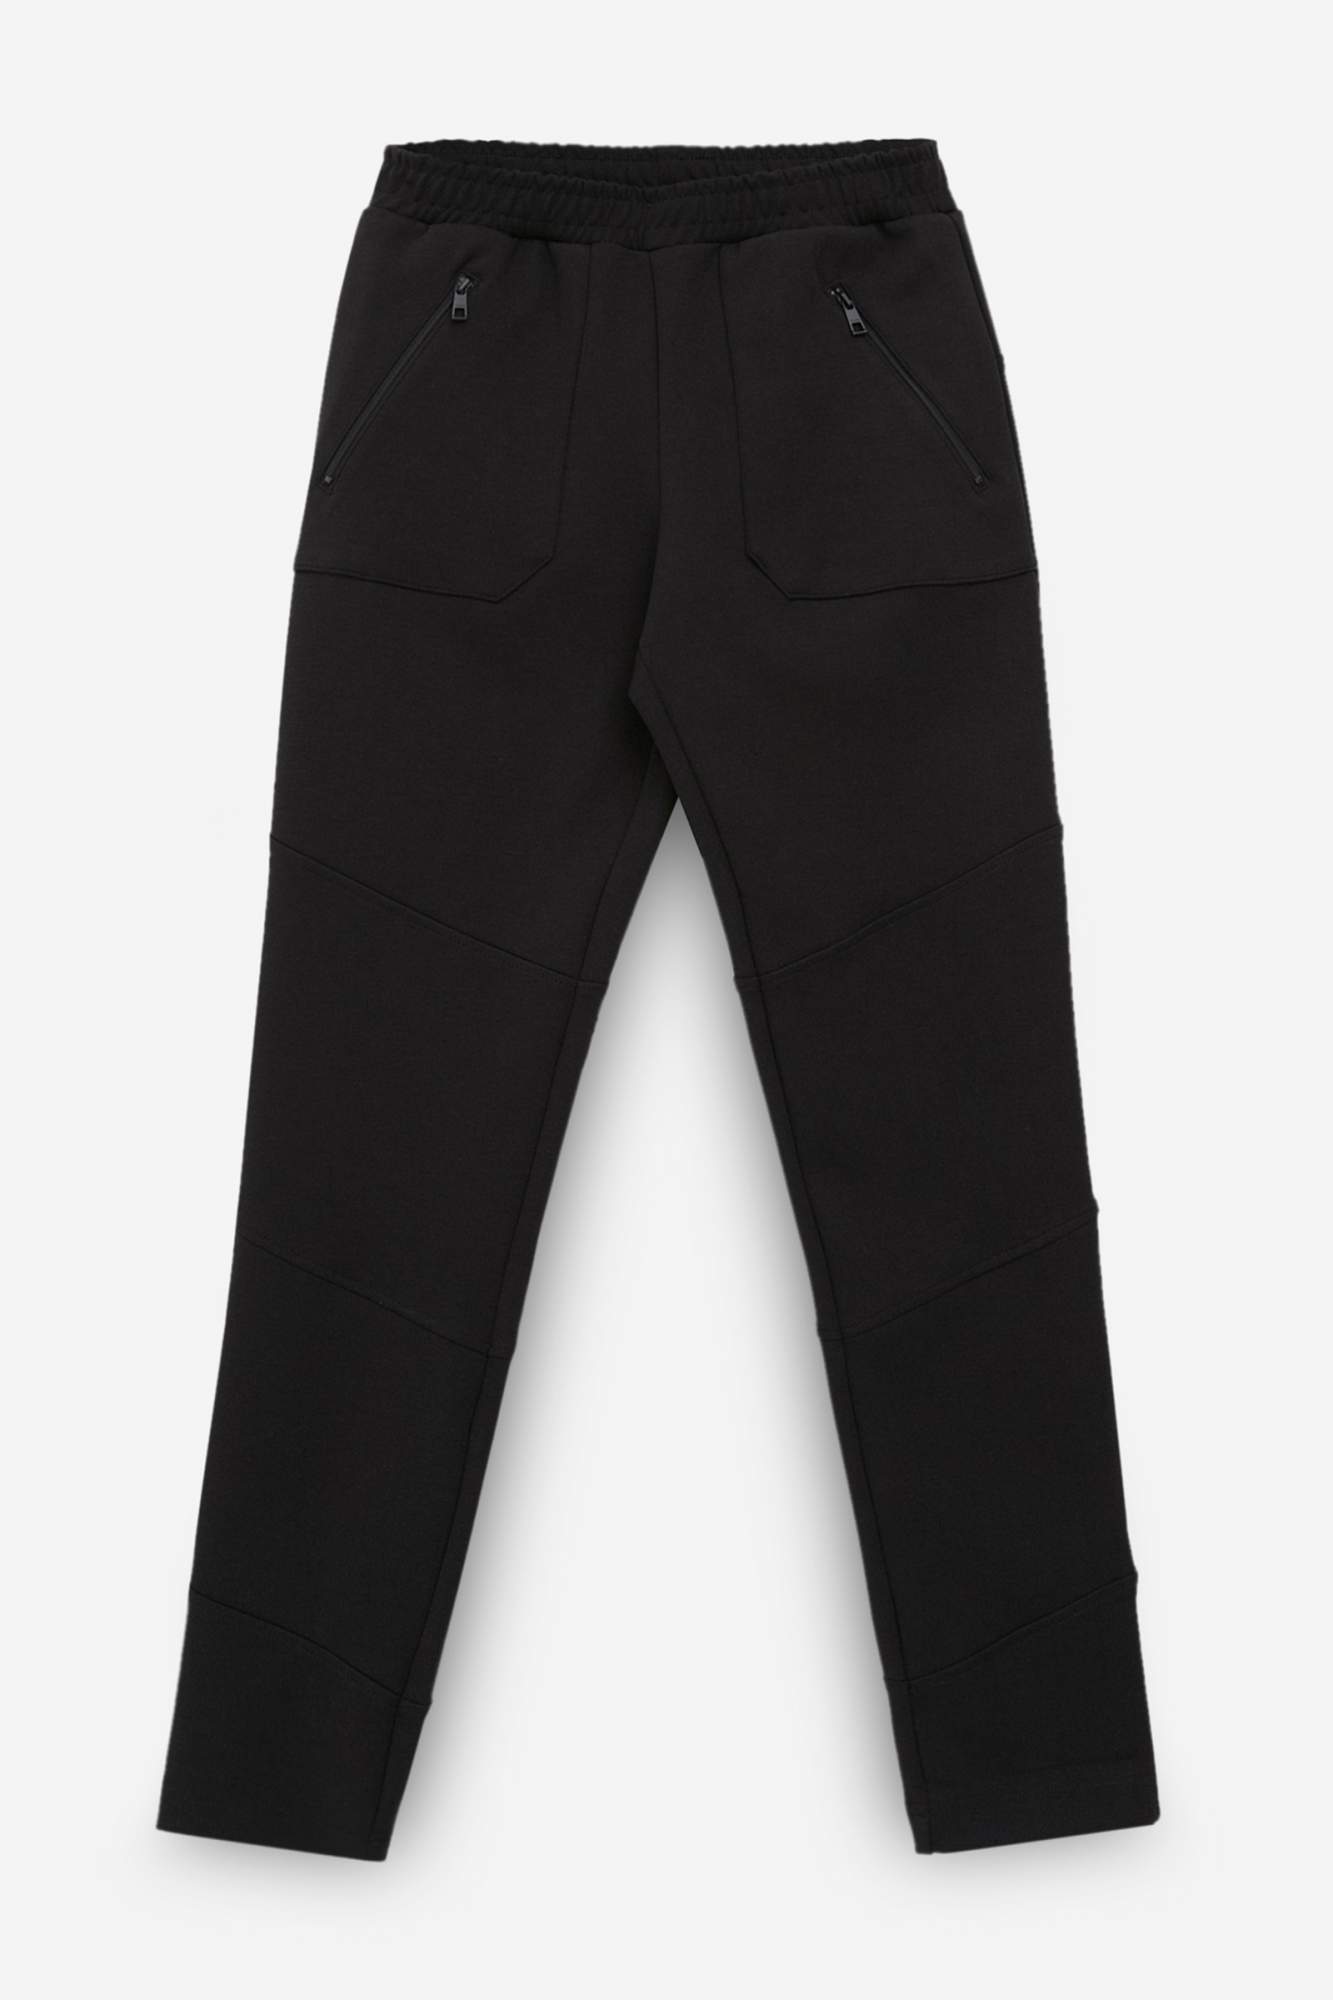 Спортивные брюки женские Finn Flare FBC13075 черные XL